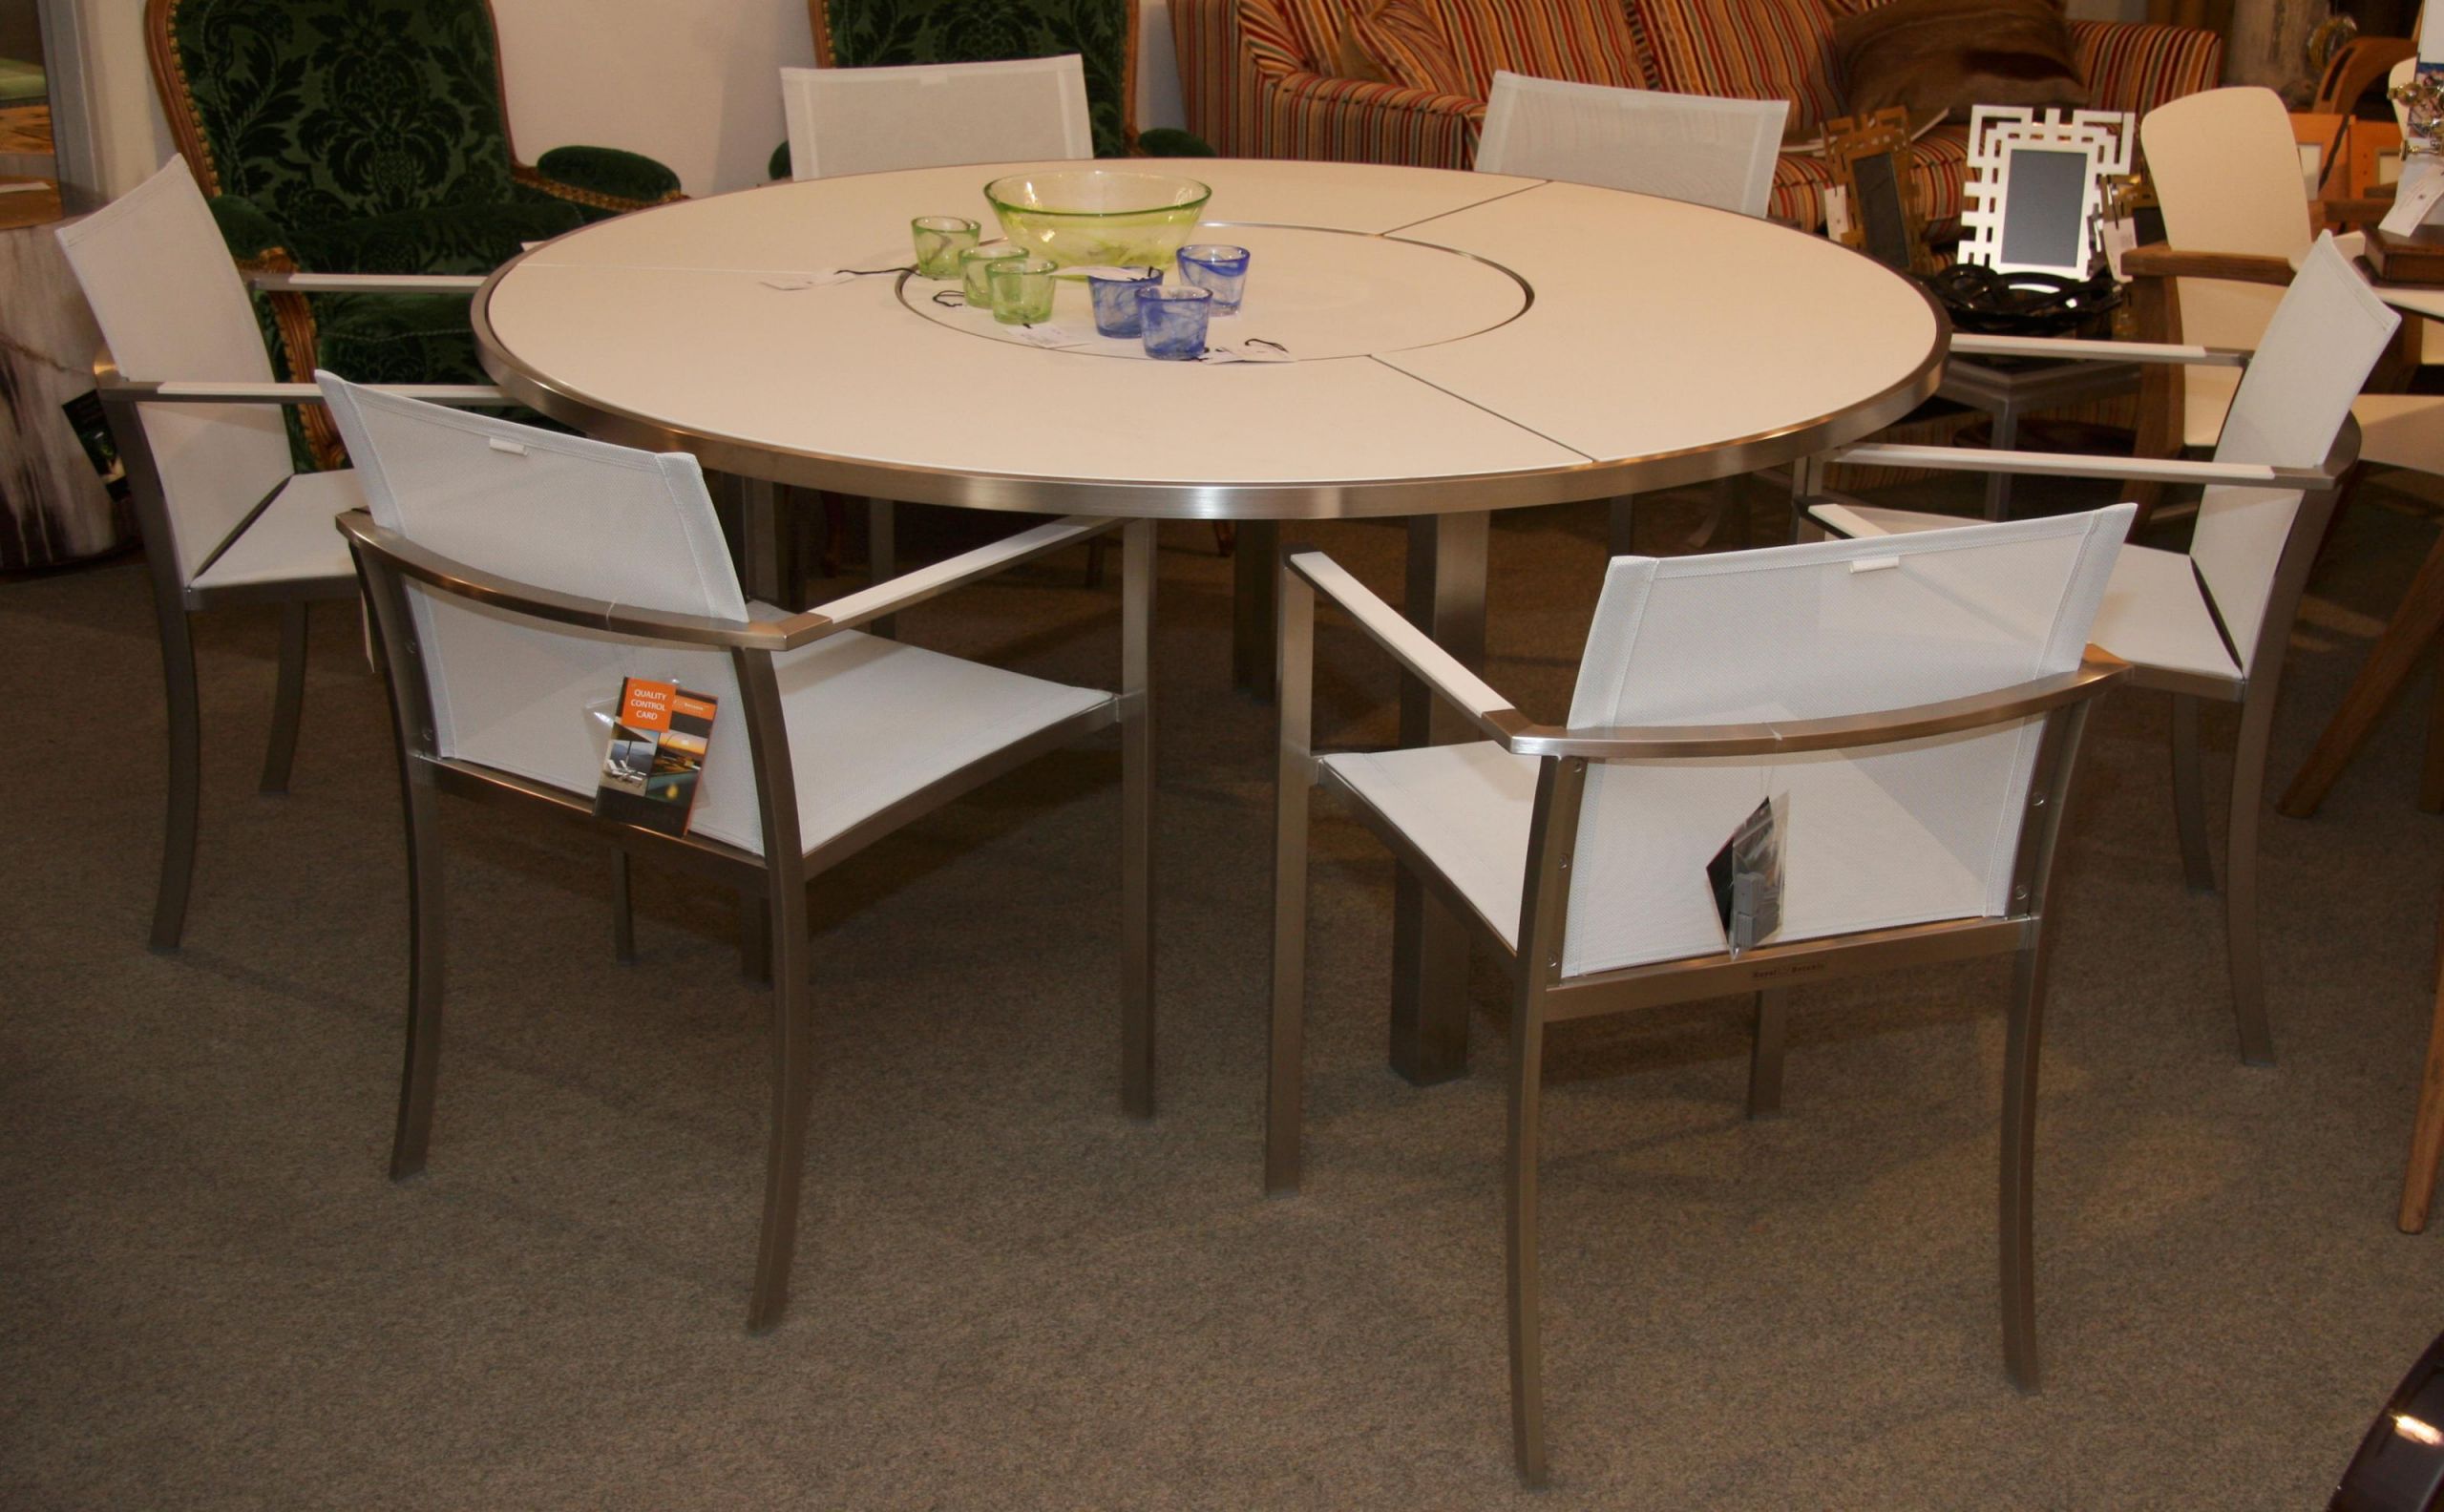 img original ensemble mobilier royal botania pour terrasse jardin pose une table ronde zon avec pietement neuf à inspirant conception conforama chaise pliante